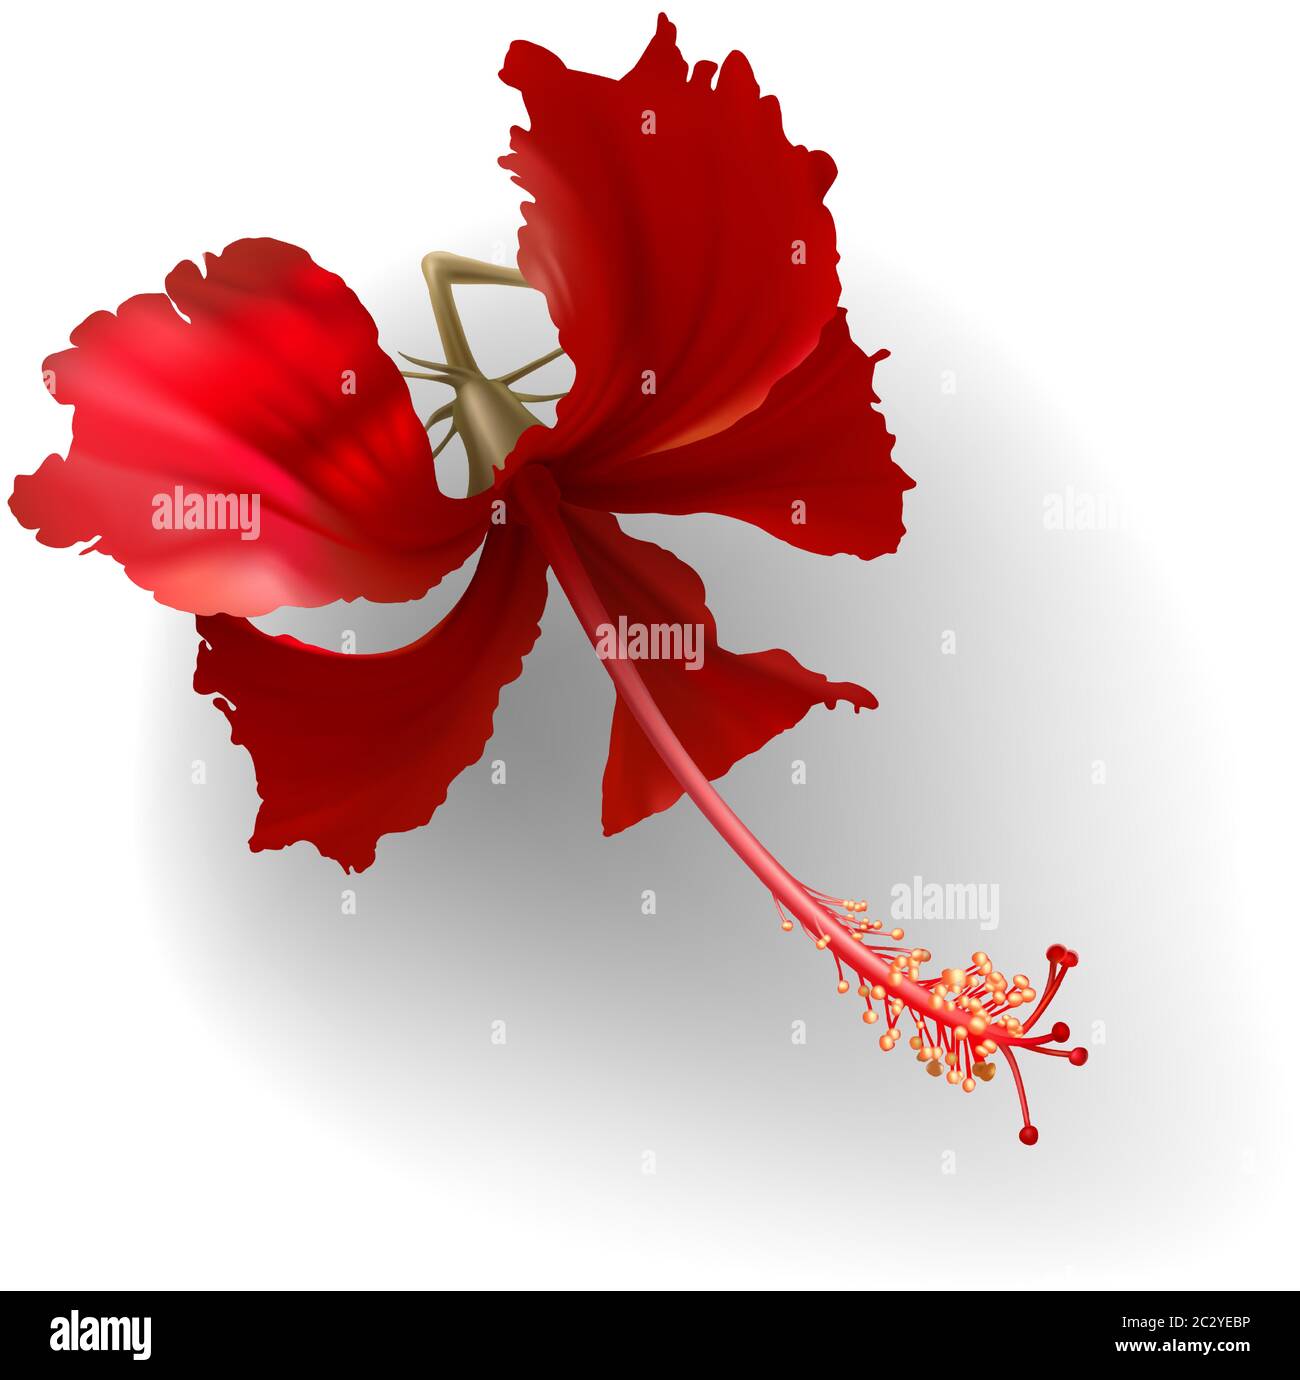 Tropicale esotico rosso oro fiore hibiscus su sfondo bianco vettore. Bellissimo elemento di disegno botanico, pianta tropicale della giungla per cerimonia nuziale in Illustrazione Vettoriale